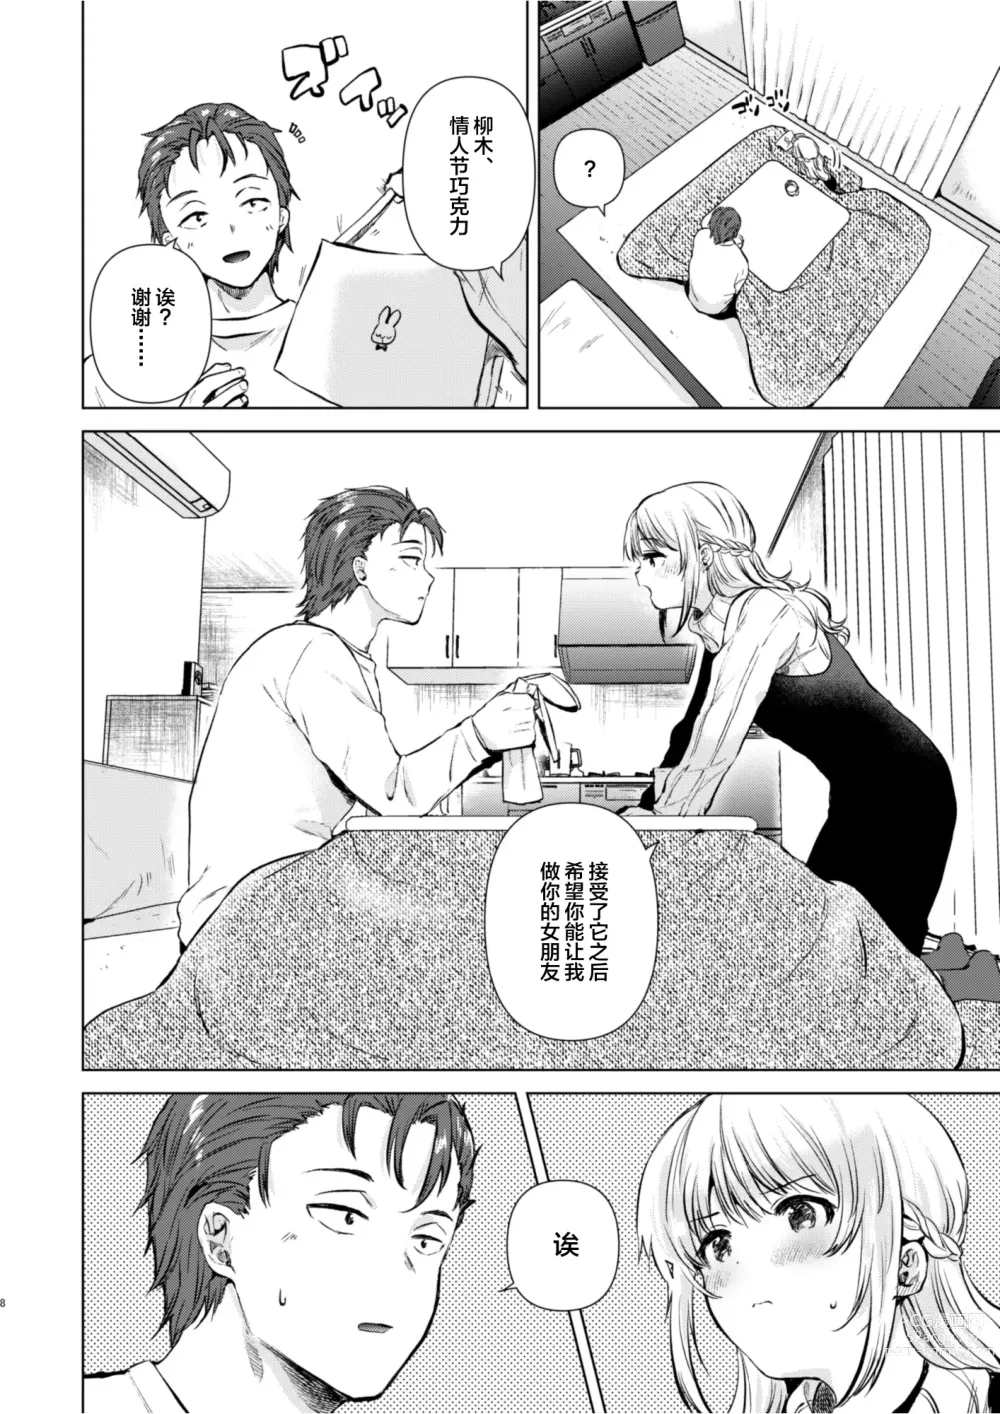 Page 7 of doujinshi Tsumugi-chan no Seichouki